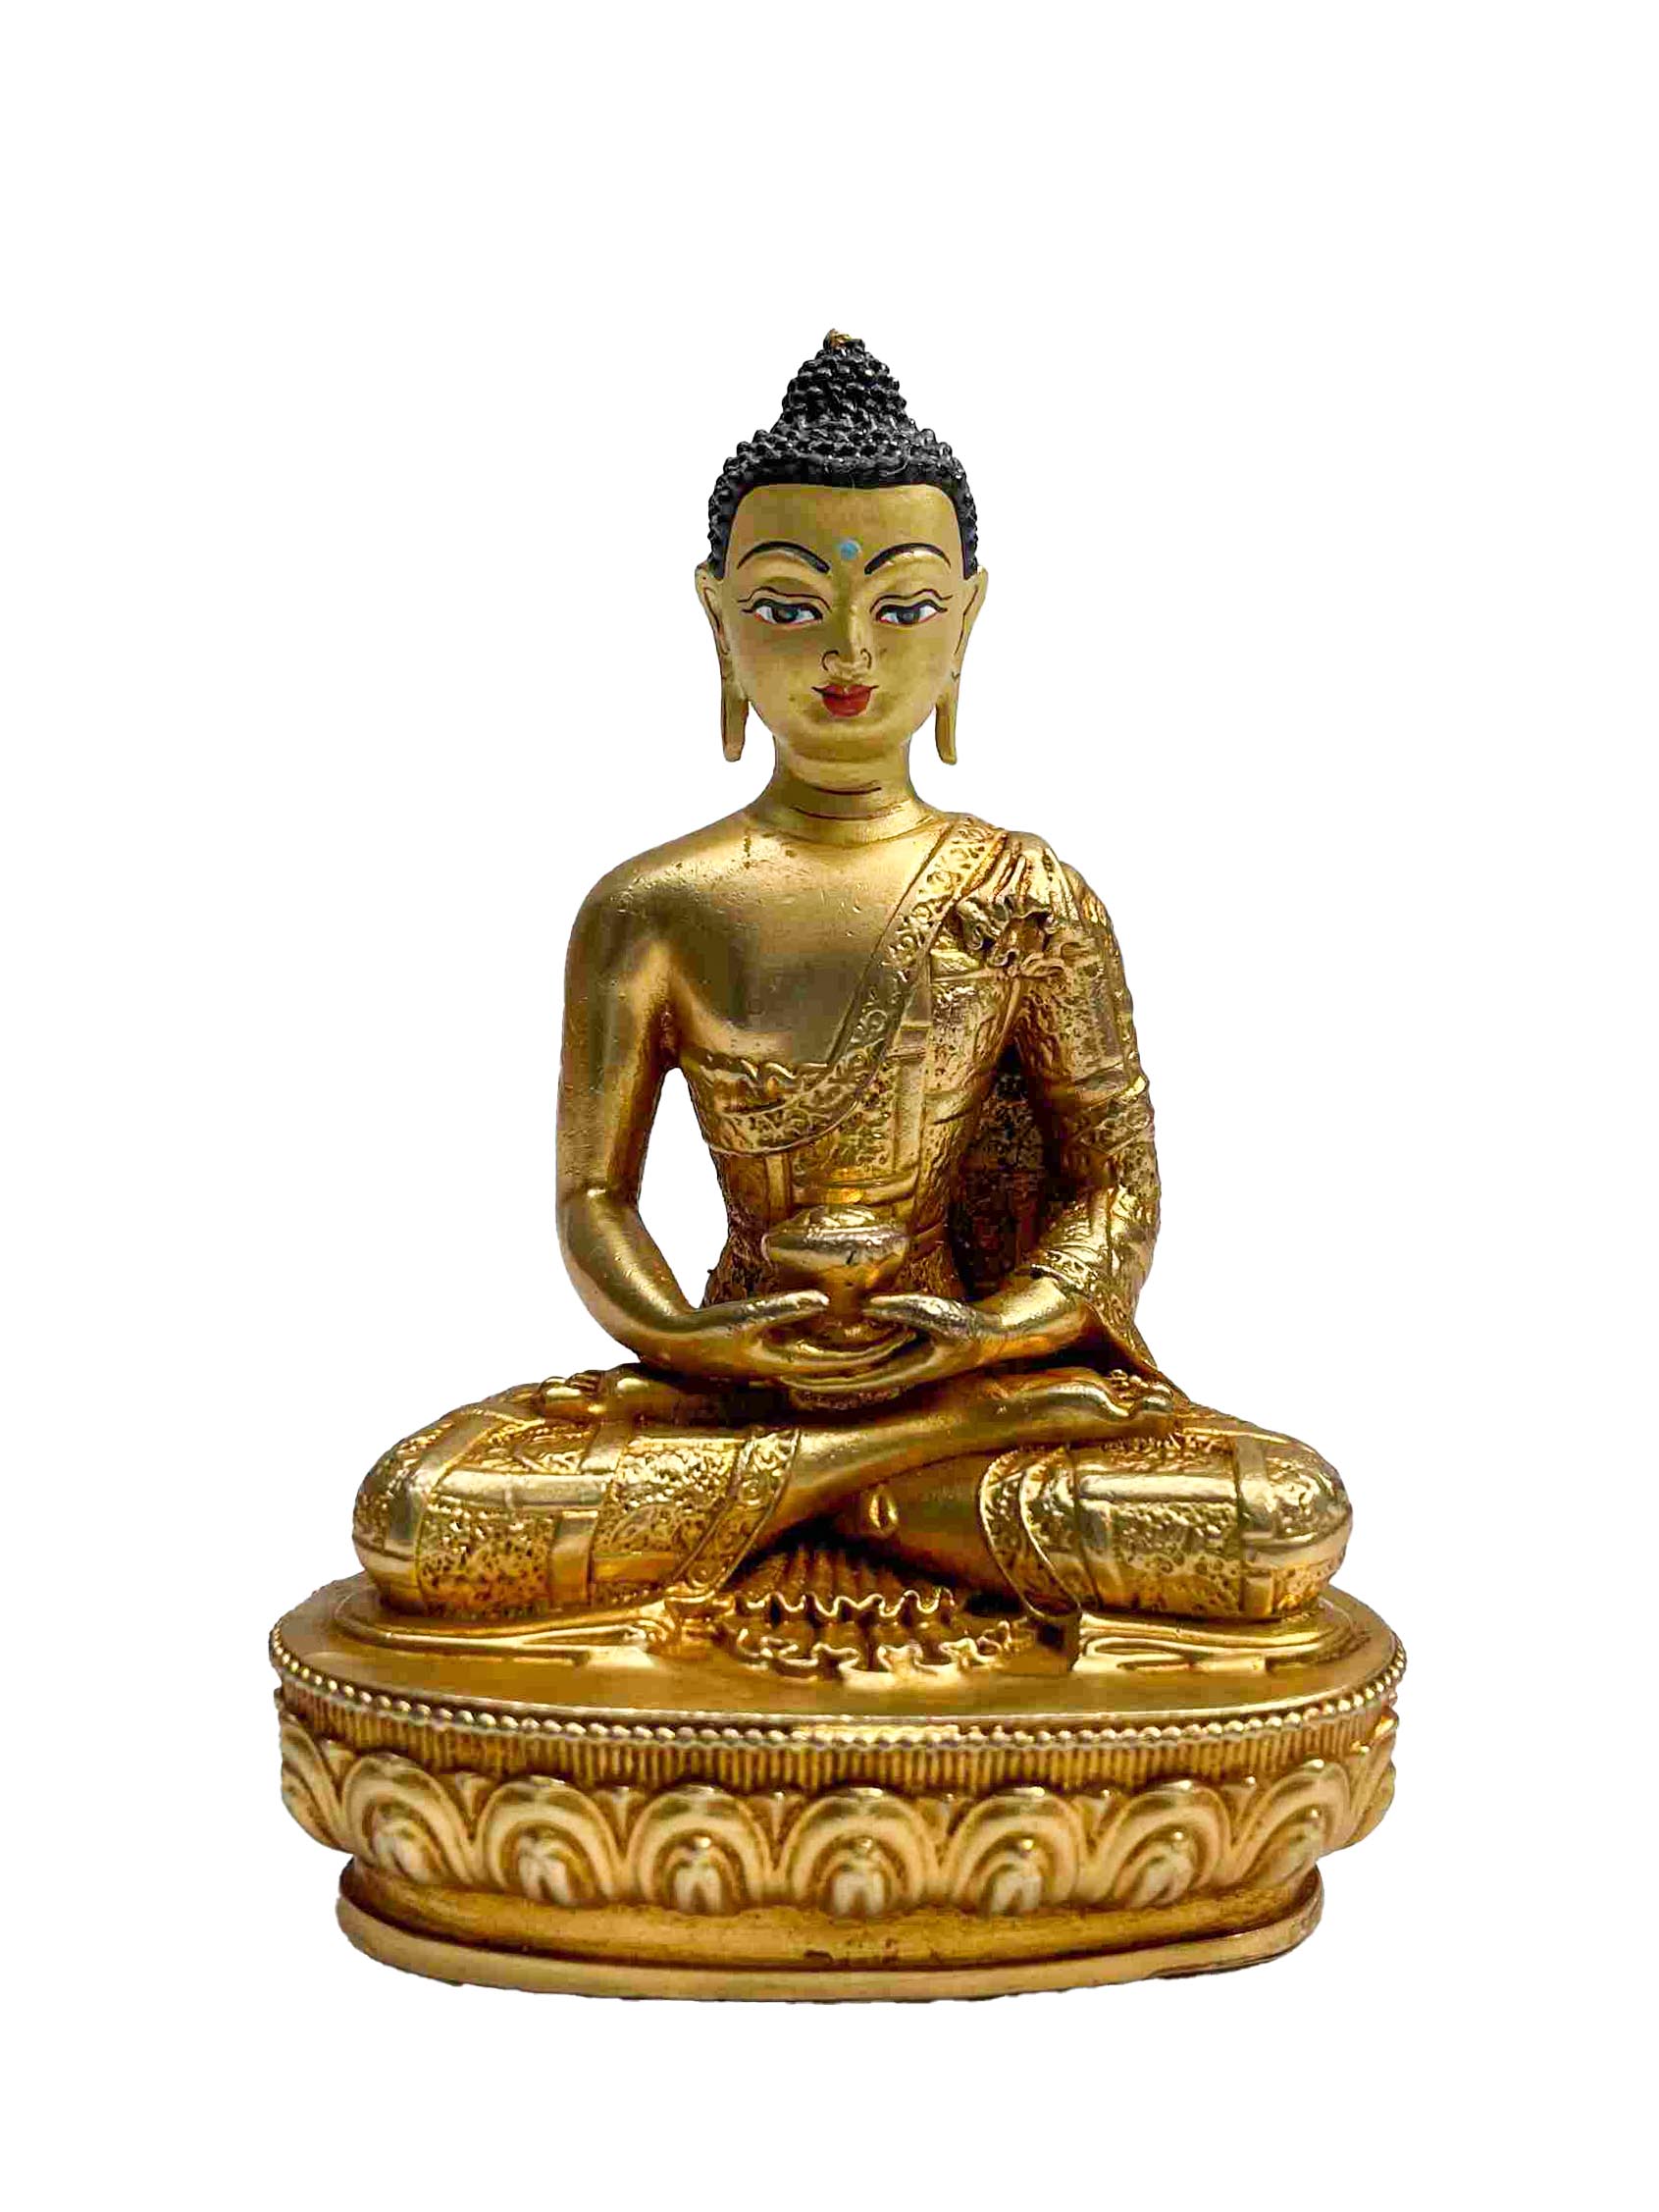 Buddhist Handmade Statue Of Pancha Buddha Set Of Shakyamuni Buddha, Amitabha Buddha, Ratnasambhava Buddha, Vairochana Buddha, Amoghasiddi Buddha, full Gold Plated, Face Painted, per Pcs 200grams